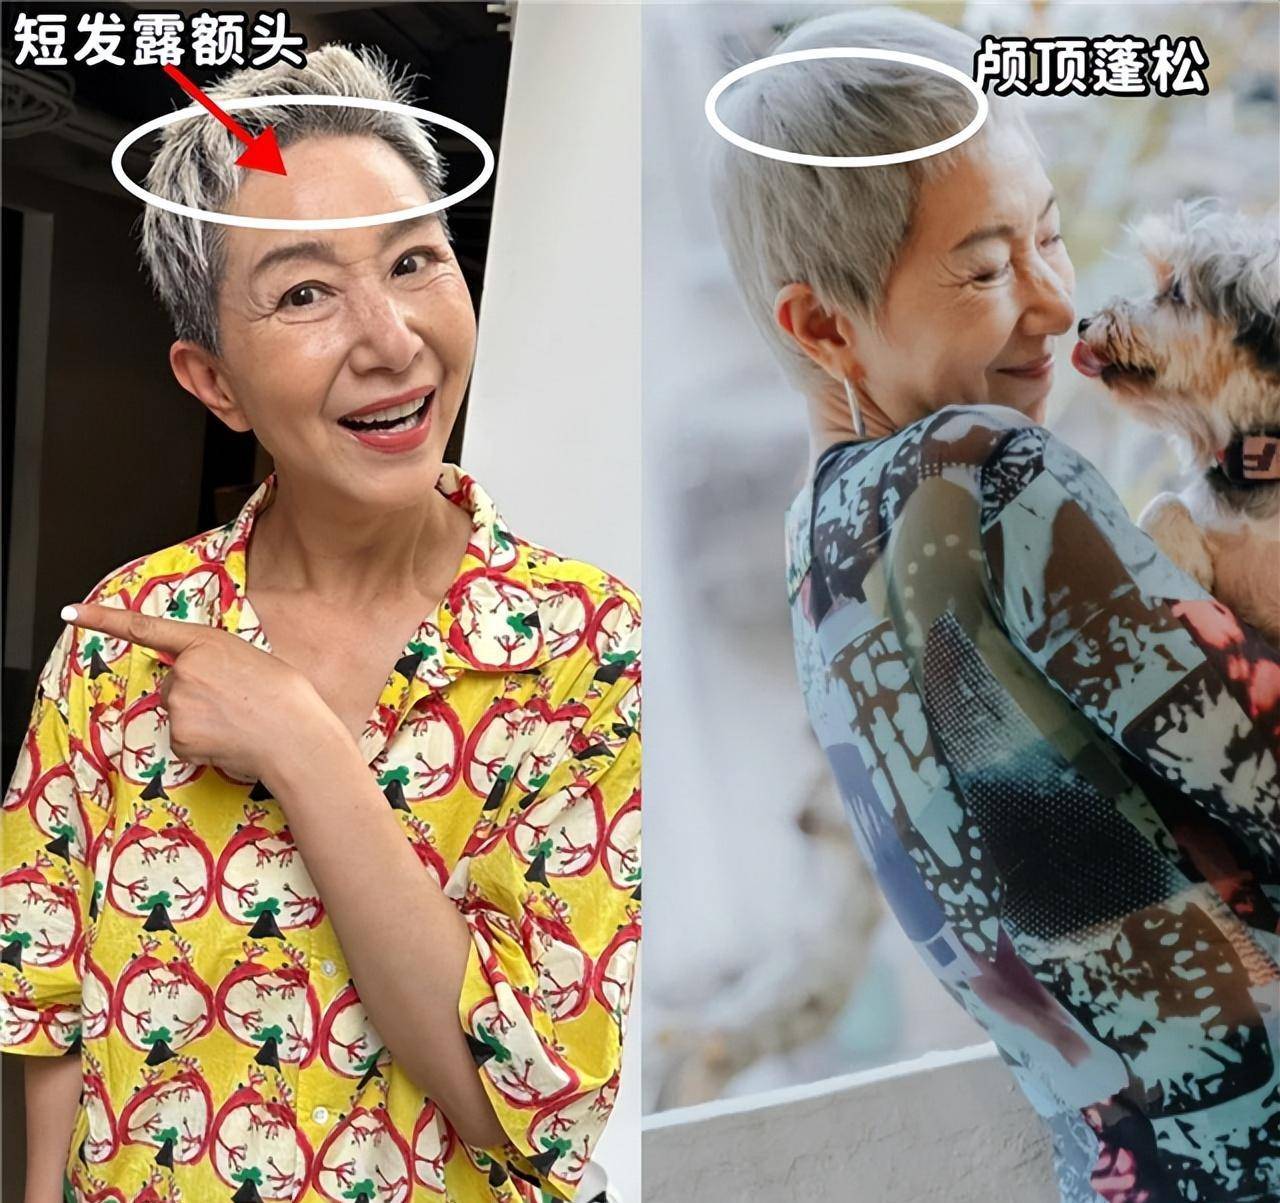 被61岁上海马姐圈粉了:白发不染,穿衣讲究,到老都是时髦人